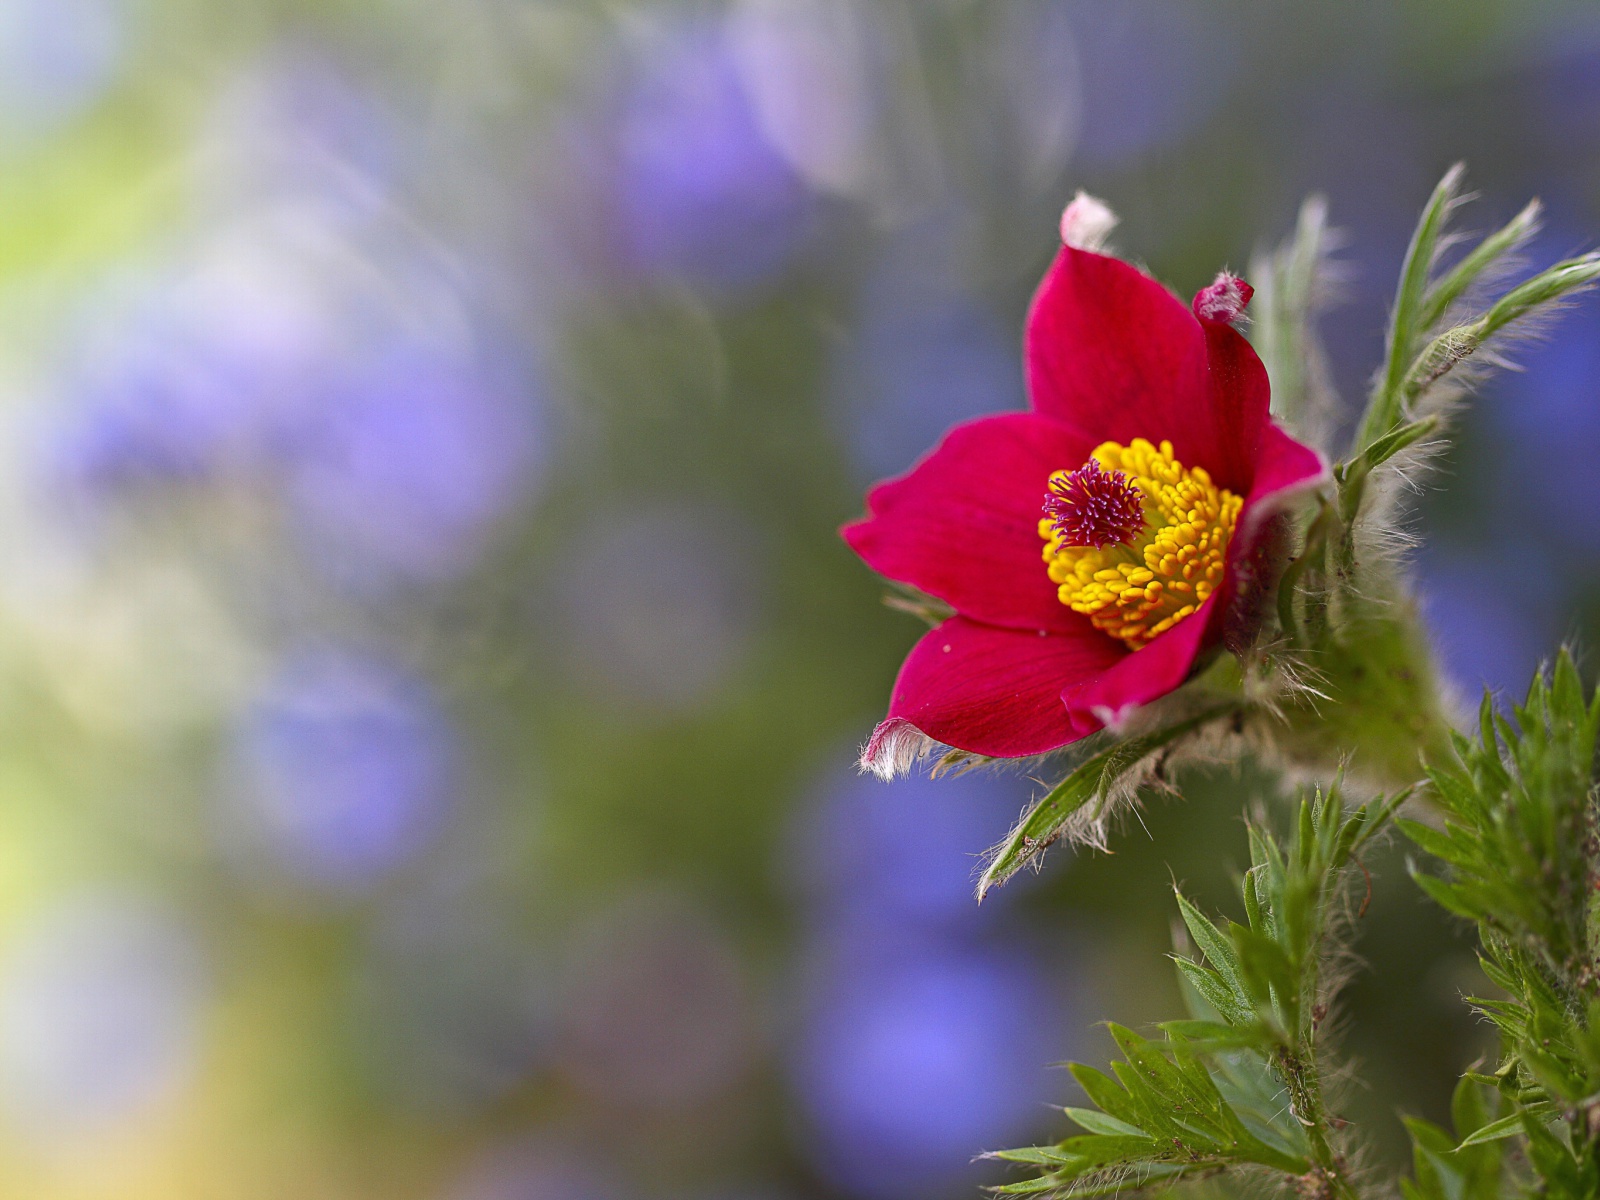 Обои Blurred flower photo 1600x1200